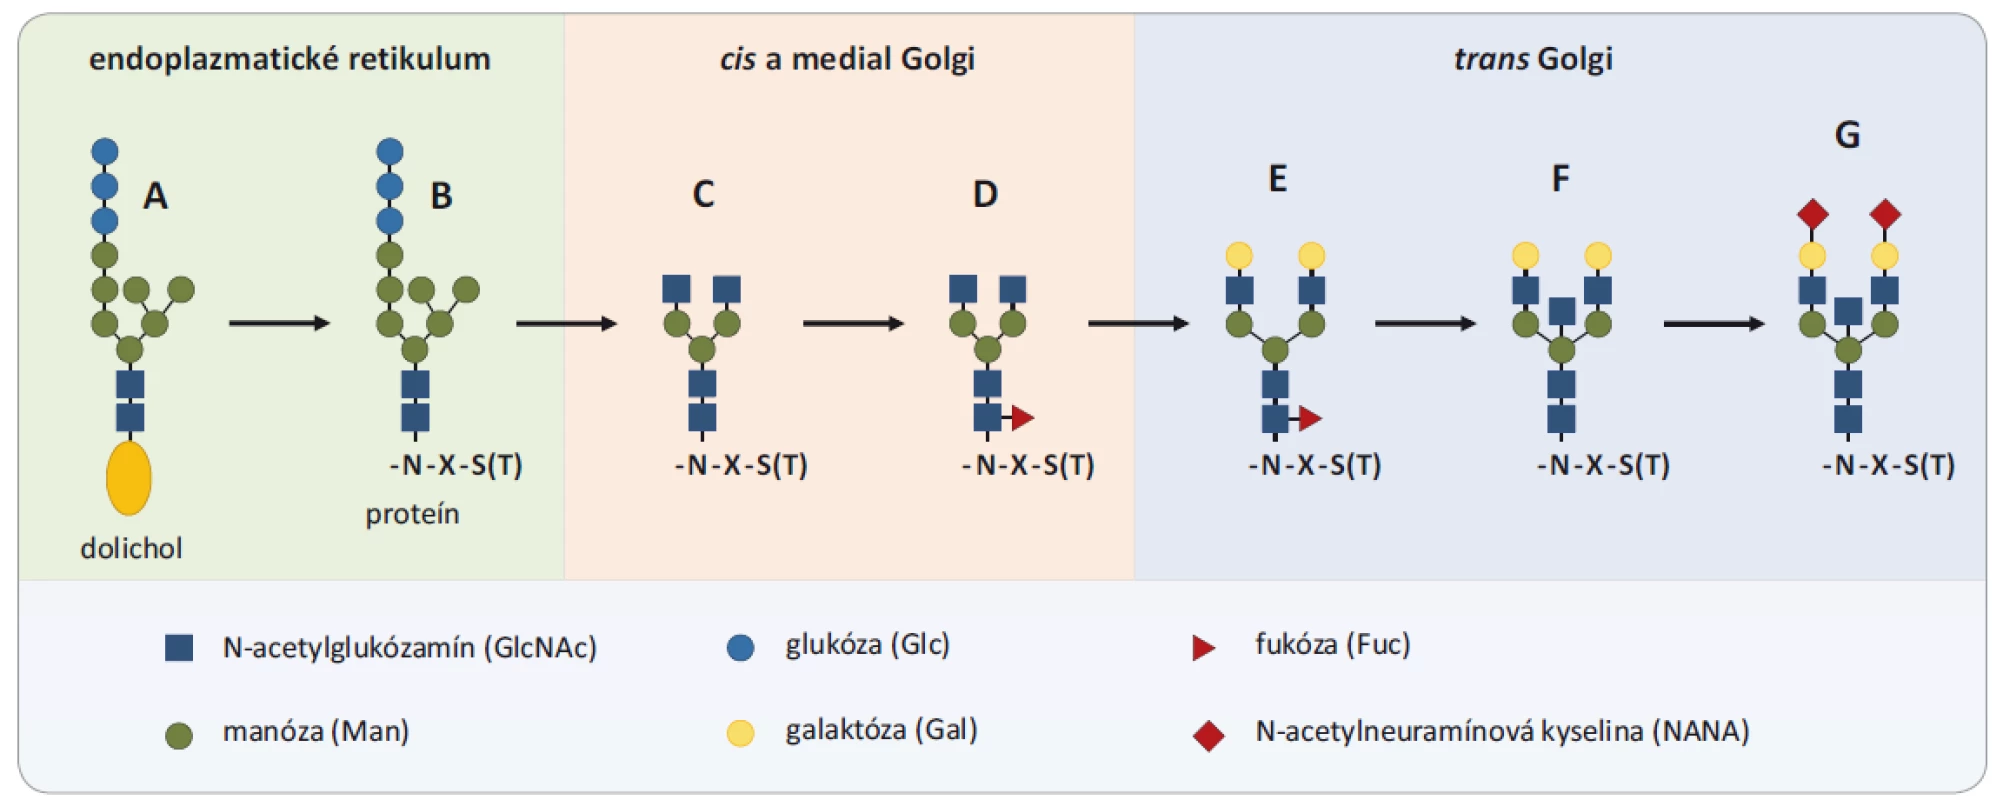 Proces glykozylácie. Proces glykozylácie začína v endoplazmatickom retikule, kde je štruktúra Glc3Man9GlcNAc2 prenesená
z molekuly dolicholilu (A) ukotveného v membráne na asparagín (N) v sekvencii novo syntetizovaného proteínu (B). Postupne
je takýto glykoproteín transportovaný do Golgiho aparátu, kde je štruktúra prekurzorového glykánu spracovaná na štruktúru
Man3GlcNAc2 s dvomi anténami (C), ktorá tvorí základ všetkých N-glykozylácií. Na toto jadro môžu byť pridávané molekuly galaktózy,
fukózy, N-acetylglukózamínu a kyseliny N-acetylneuramínove (D – core-fukozylácia, E – digalaktózovaný glykán, F – bisektínový
glykán, G – disialylovaný glykán). Prevzaté a upravené z [9].